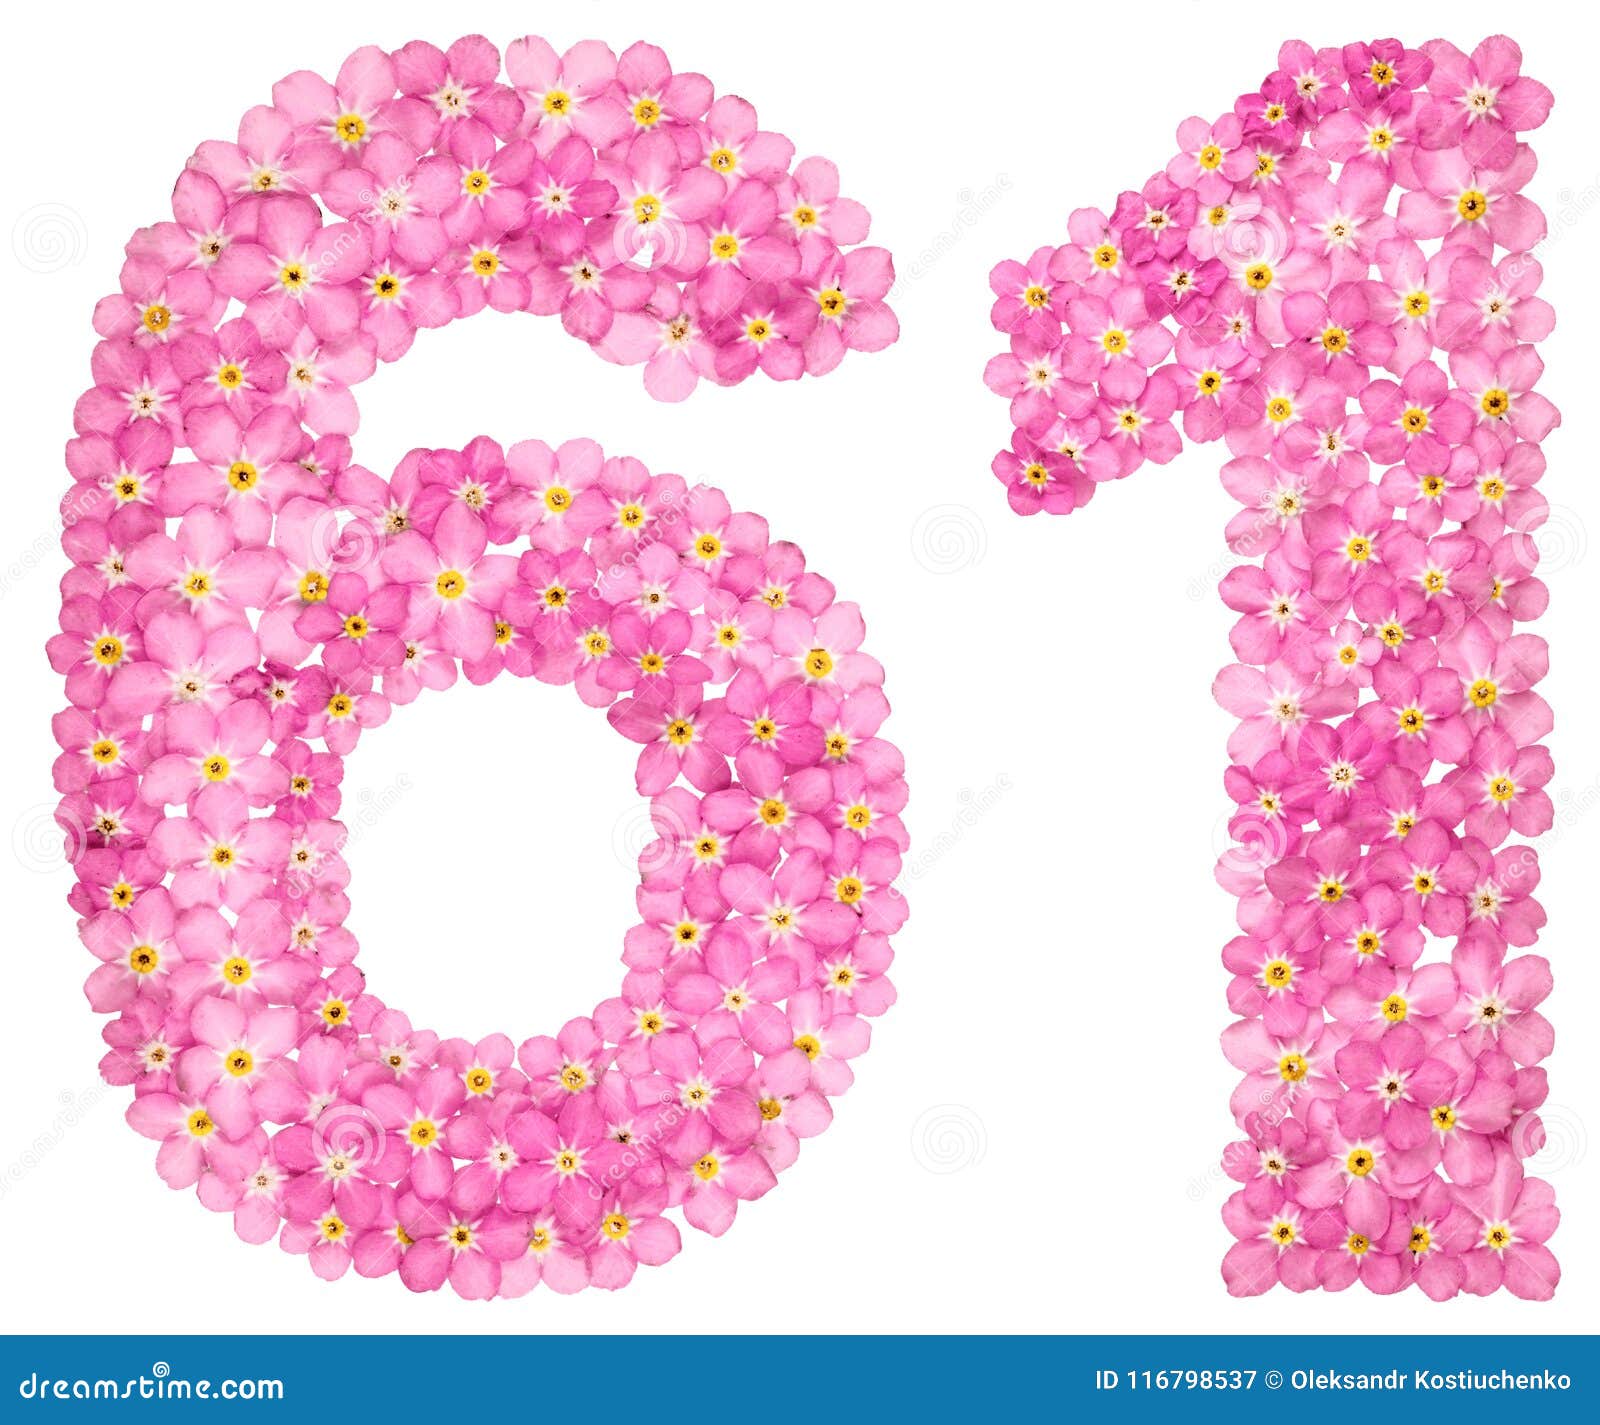 Незабудки цифра 1. Цифры из цветов. Цифра 6 розового цвета. Цифра 6 в бело розовых цветах. Цветы с цифрами.